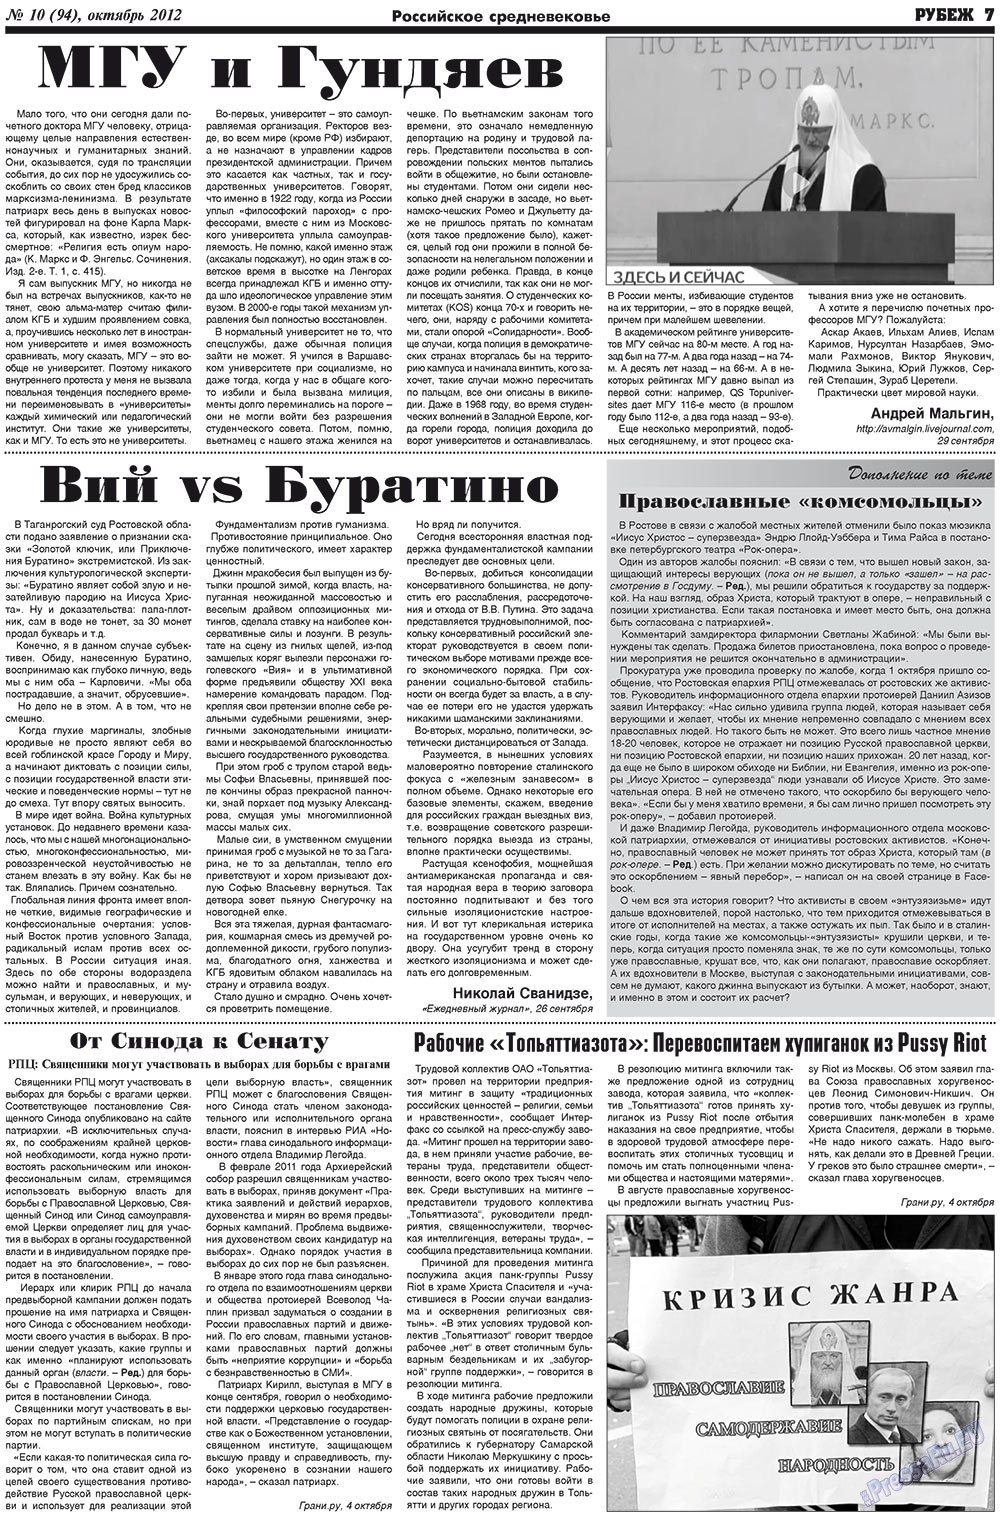 Рубеж (газета). 2012 год, номер 10, стр. 7